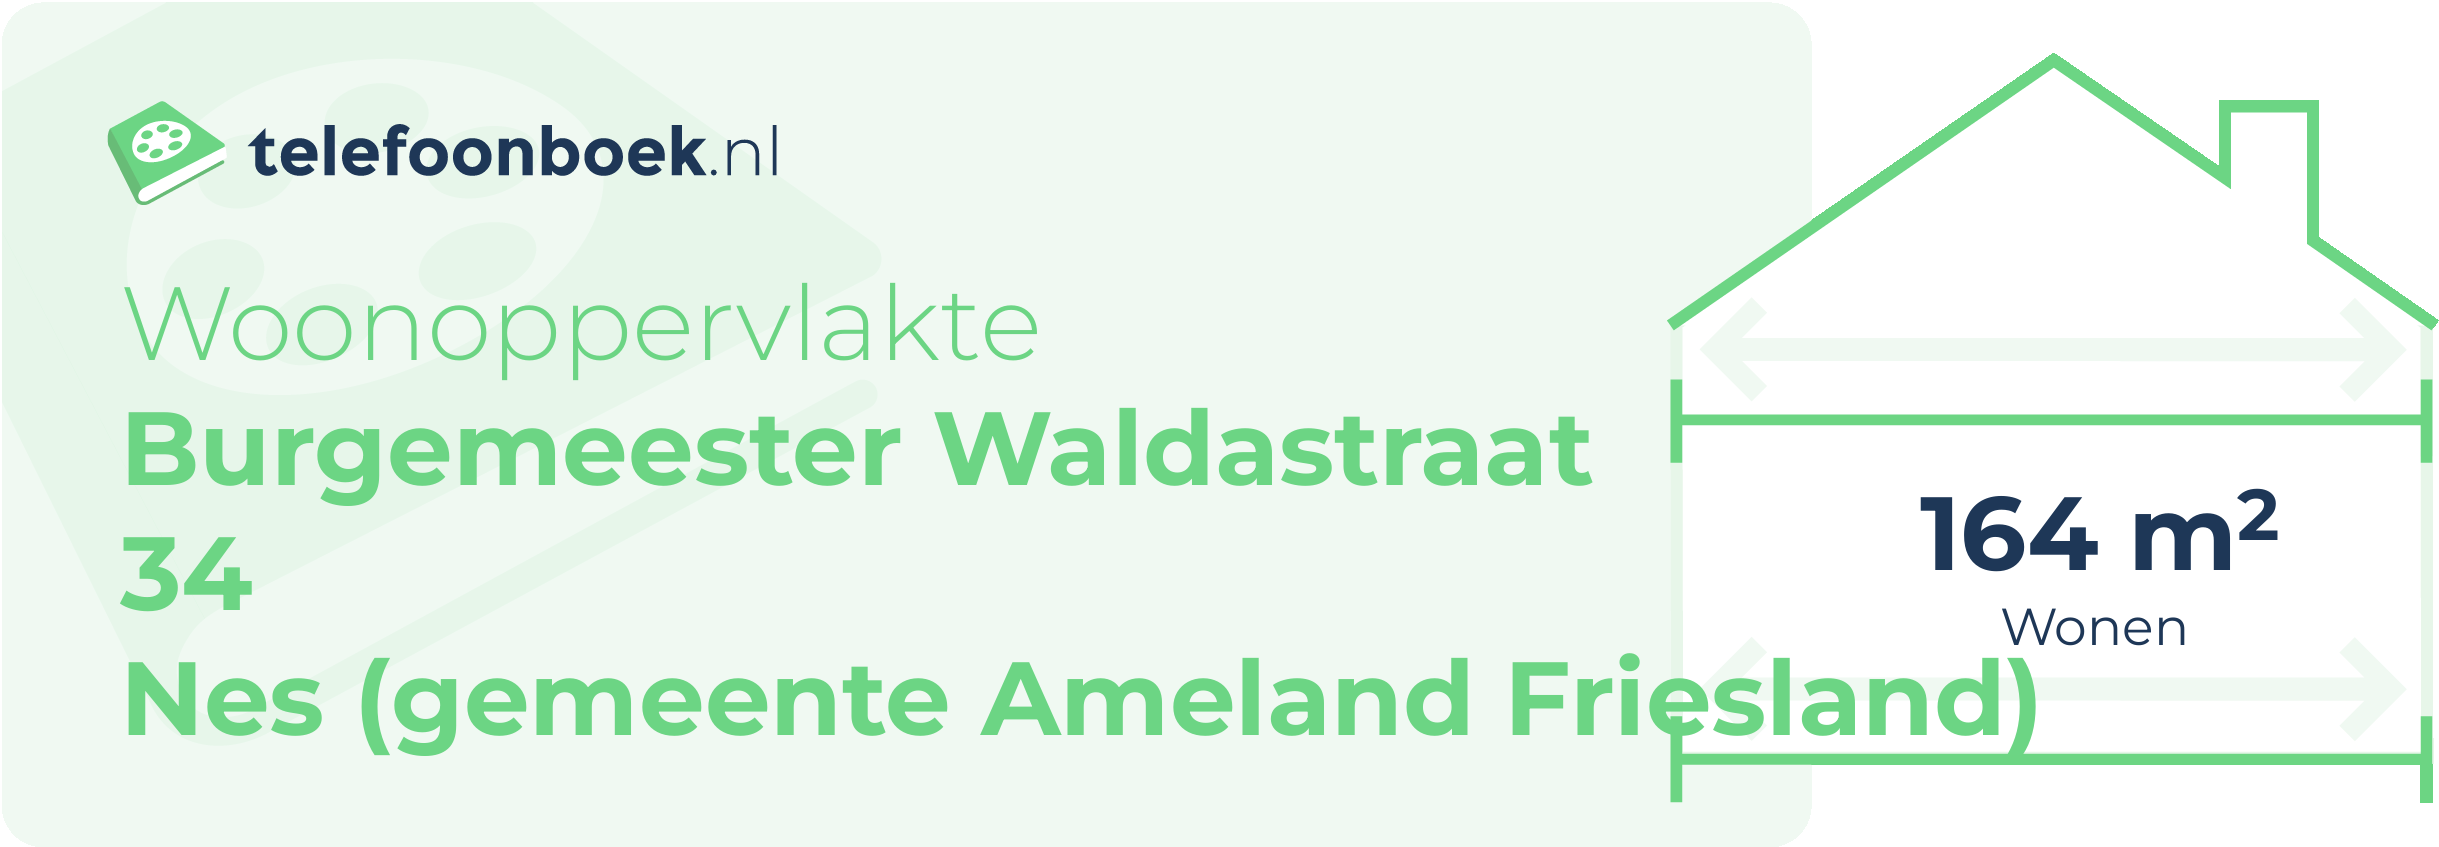 Woonoppervlakte Burgemeester Waldastraat 34 Nes (gemeente Ameland Friesland)